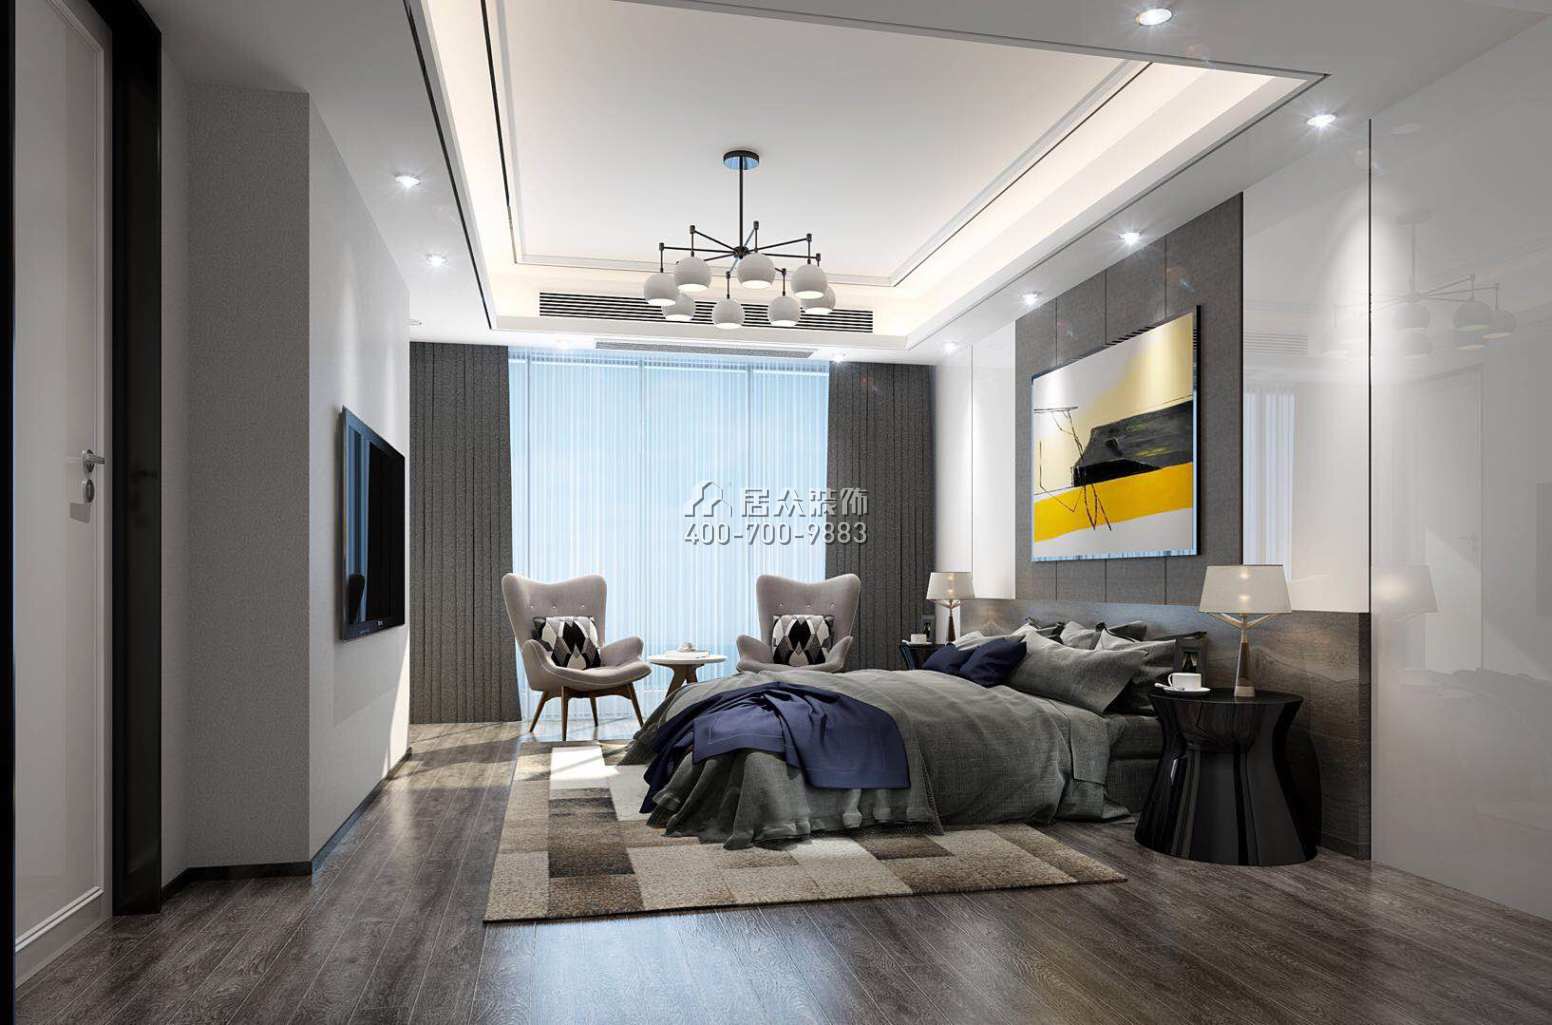 鲁能领秀城350平方米现代简约风格别墅户型卧室装修效果图